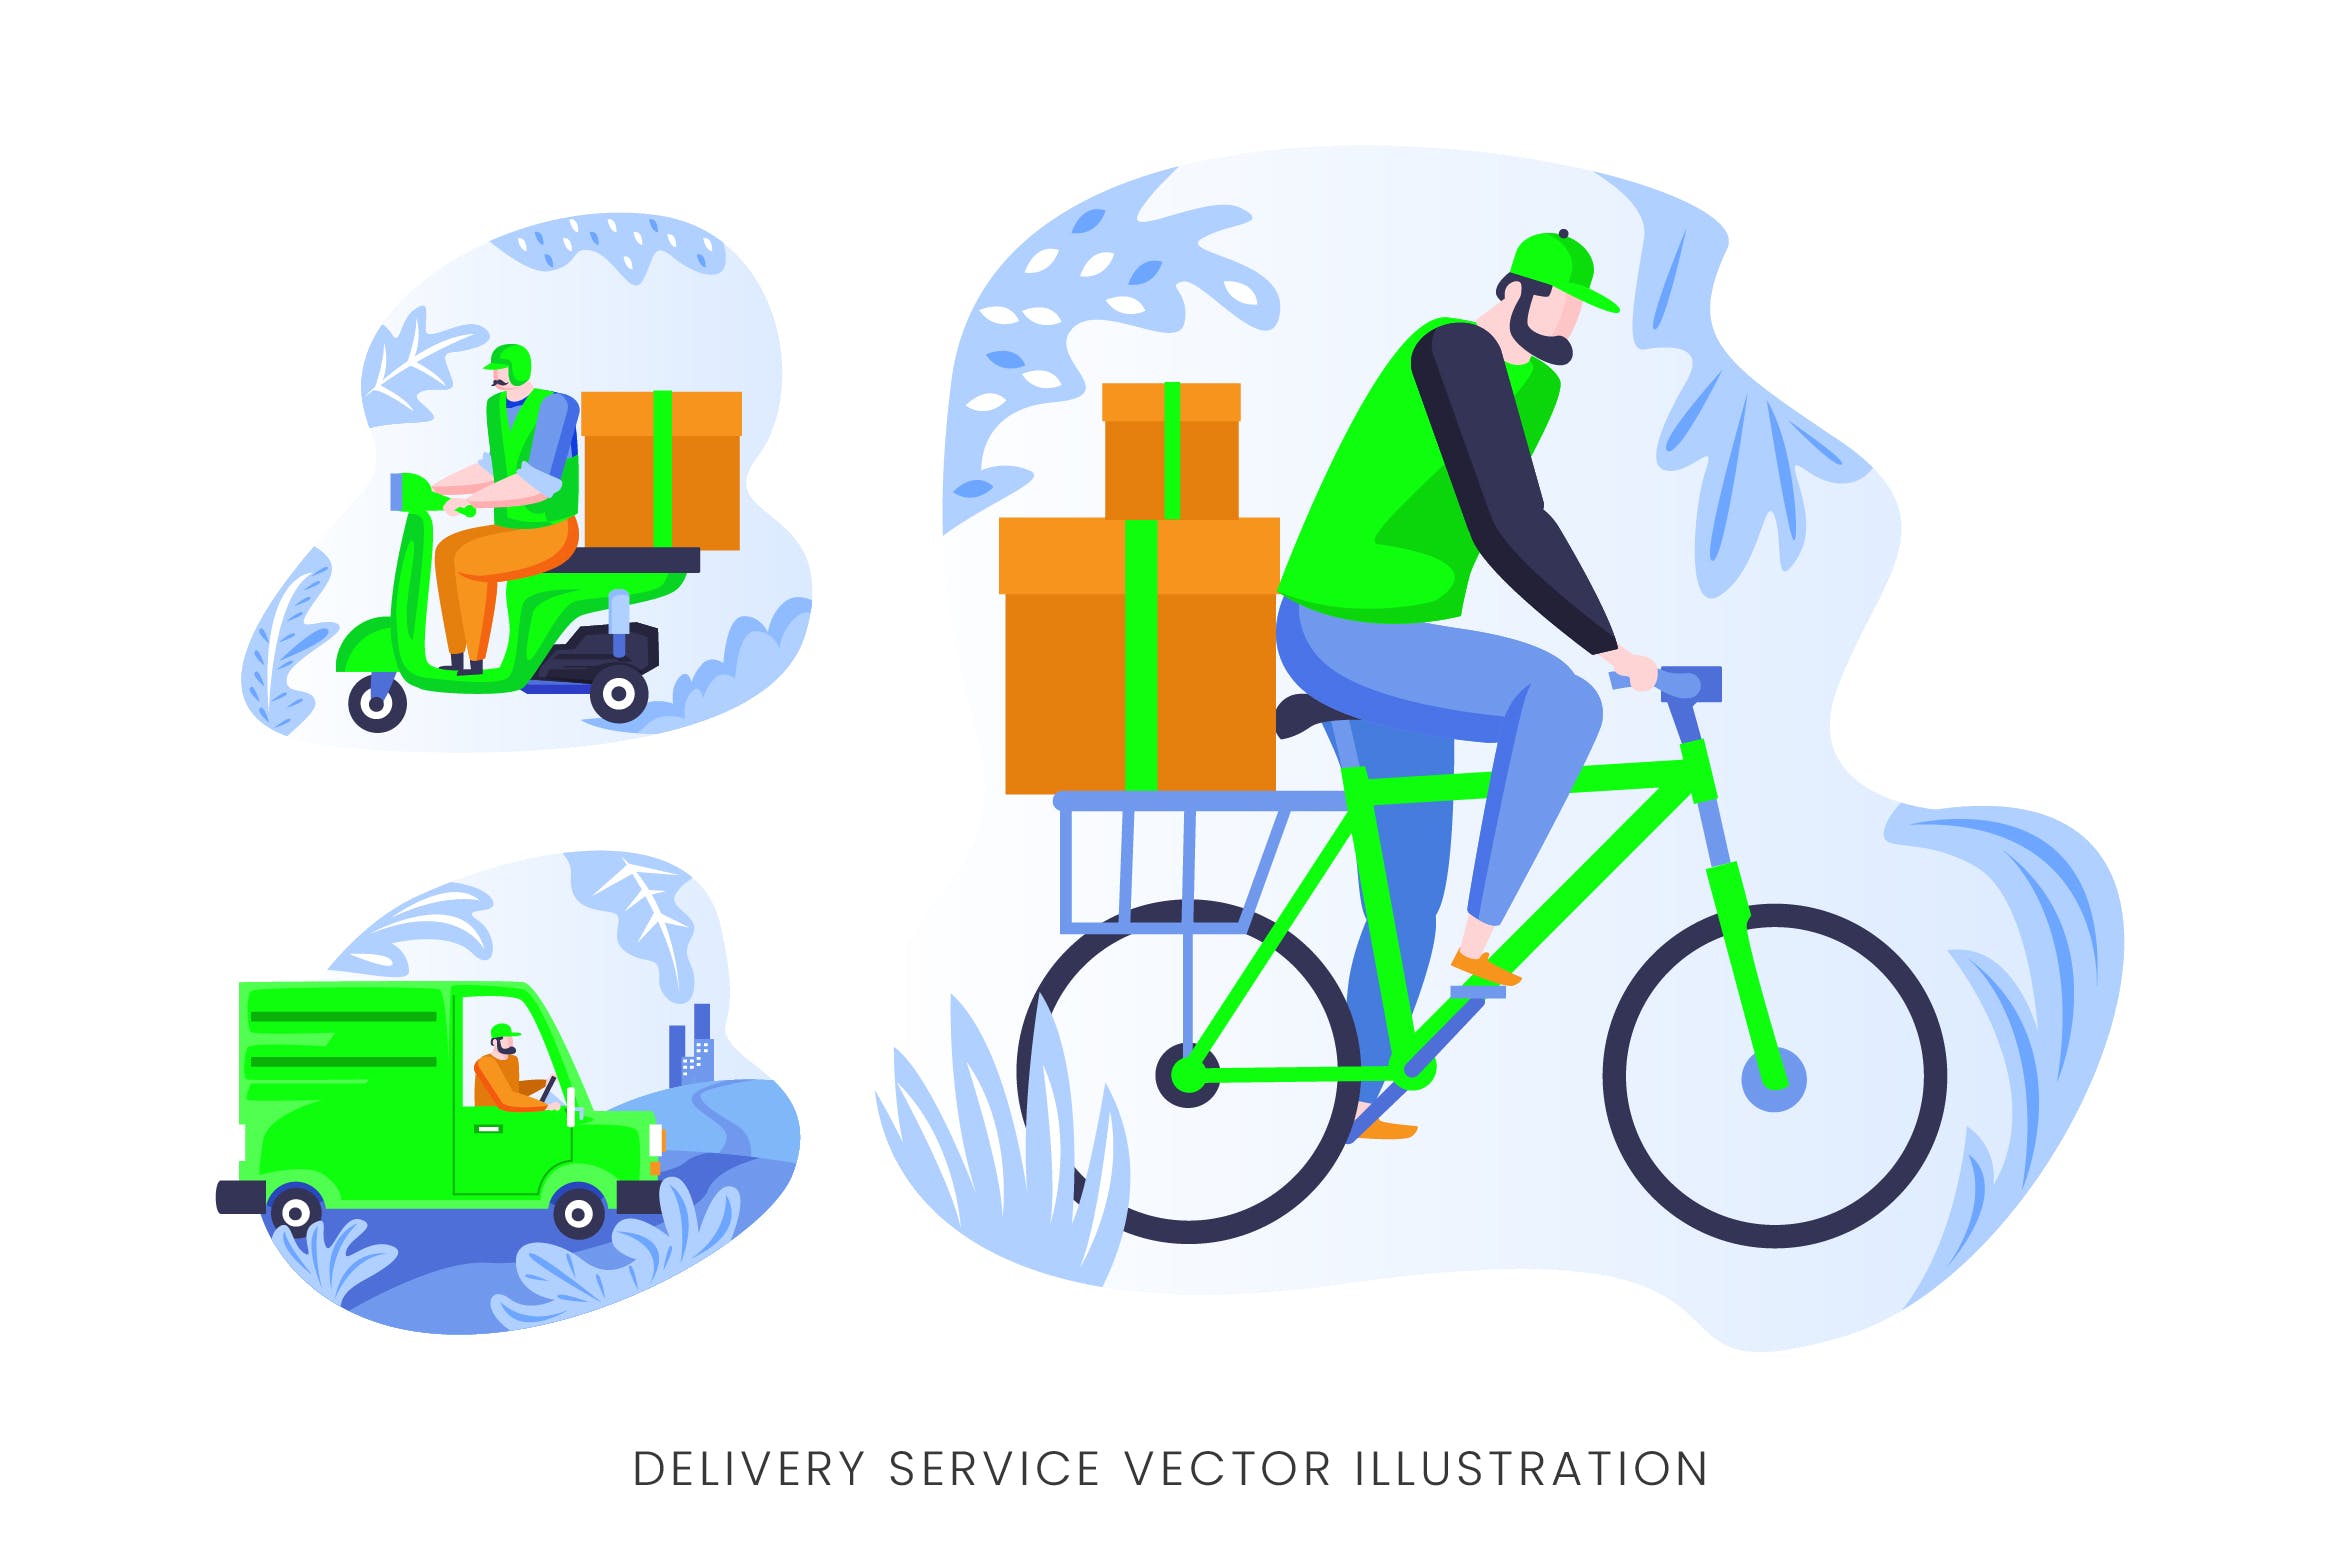 快递员送货员人物形象素材库精选手绘插画矢量素材 Delivery Services Vector Character Set插图